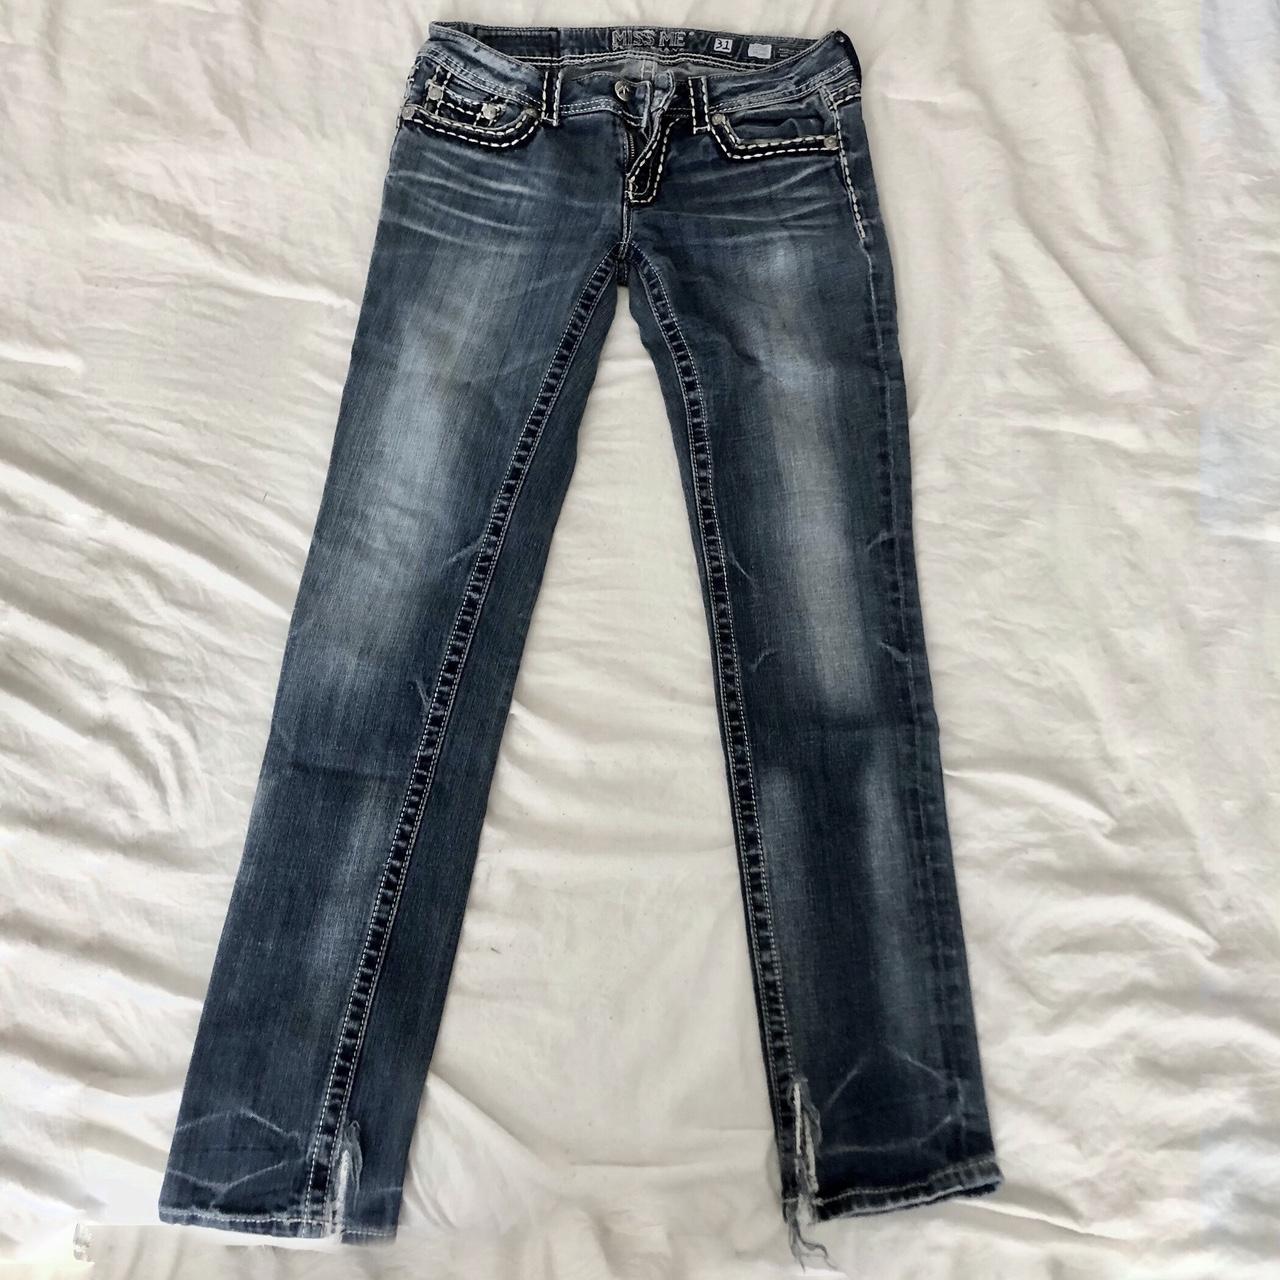 Y2K miss me brand jeans size 31 - Depop